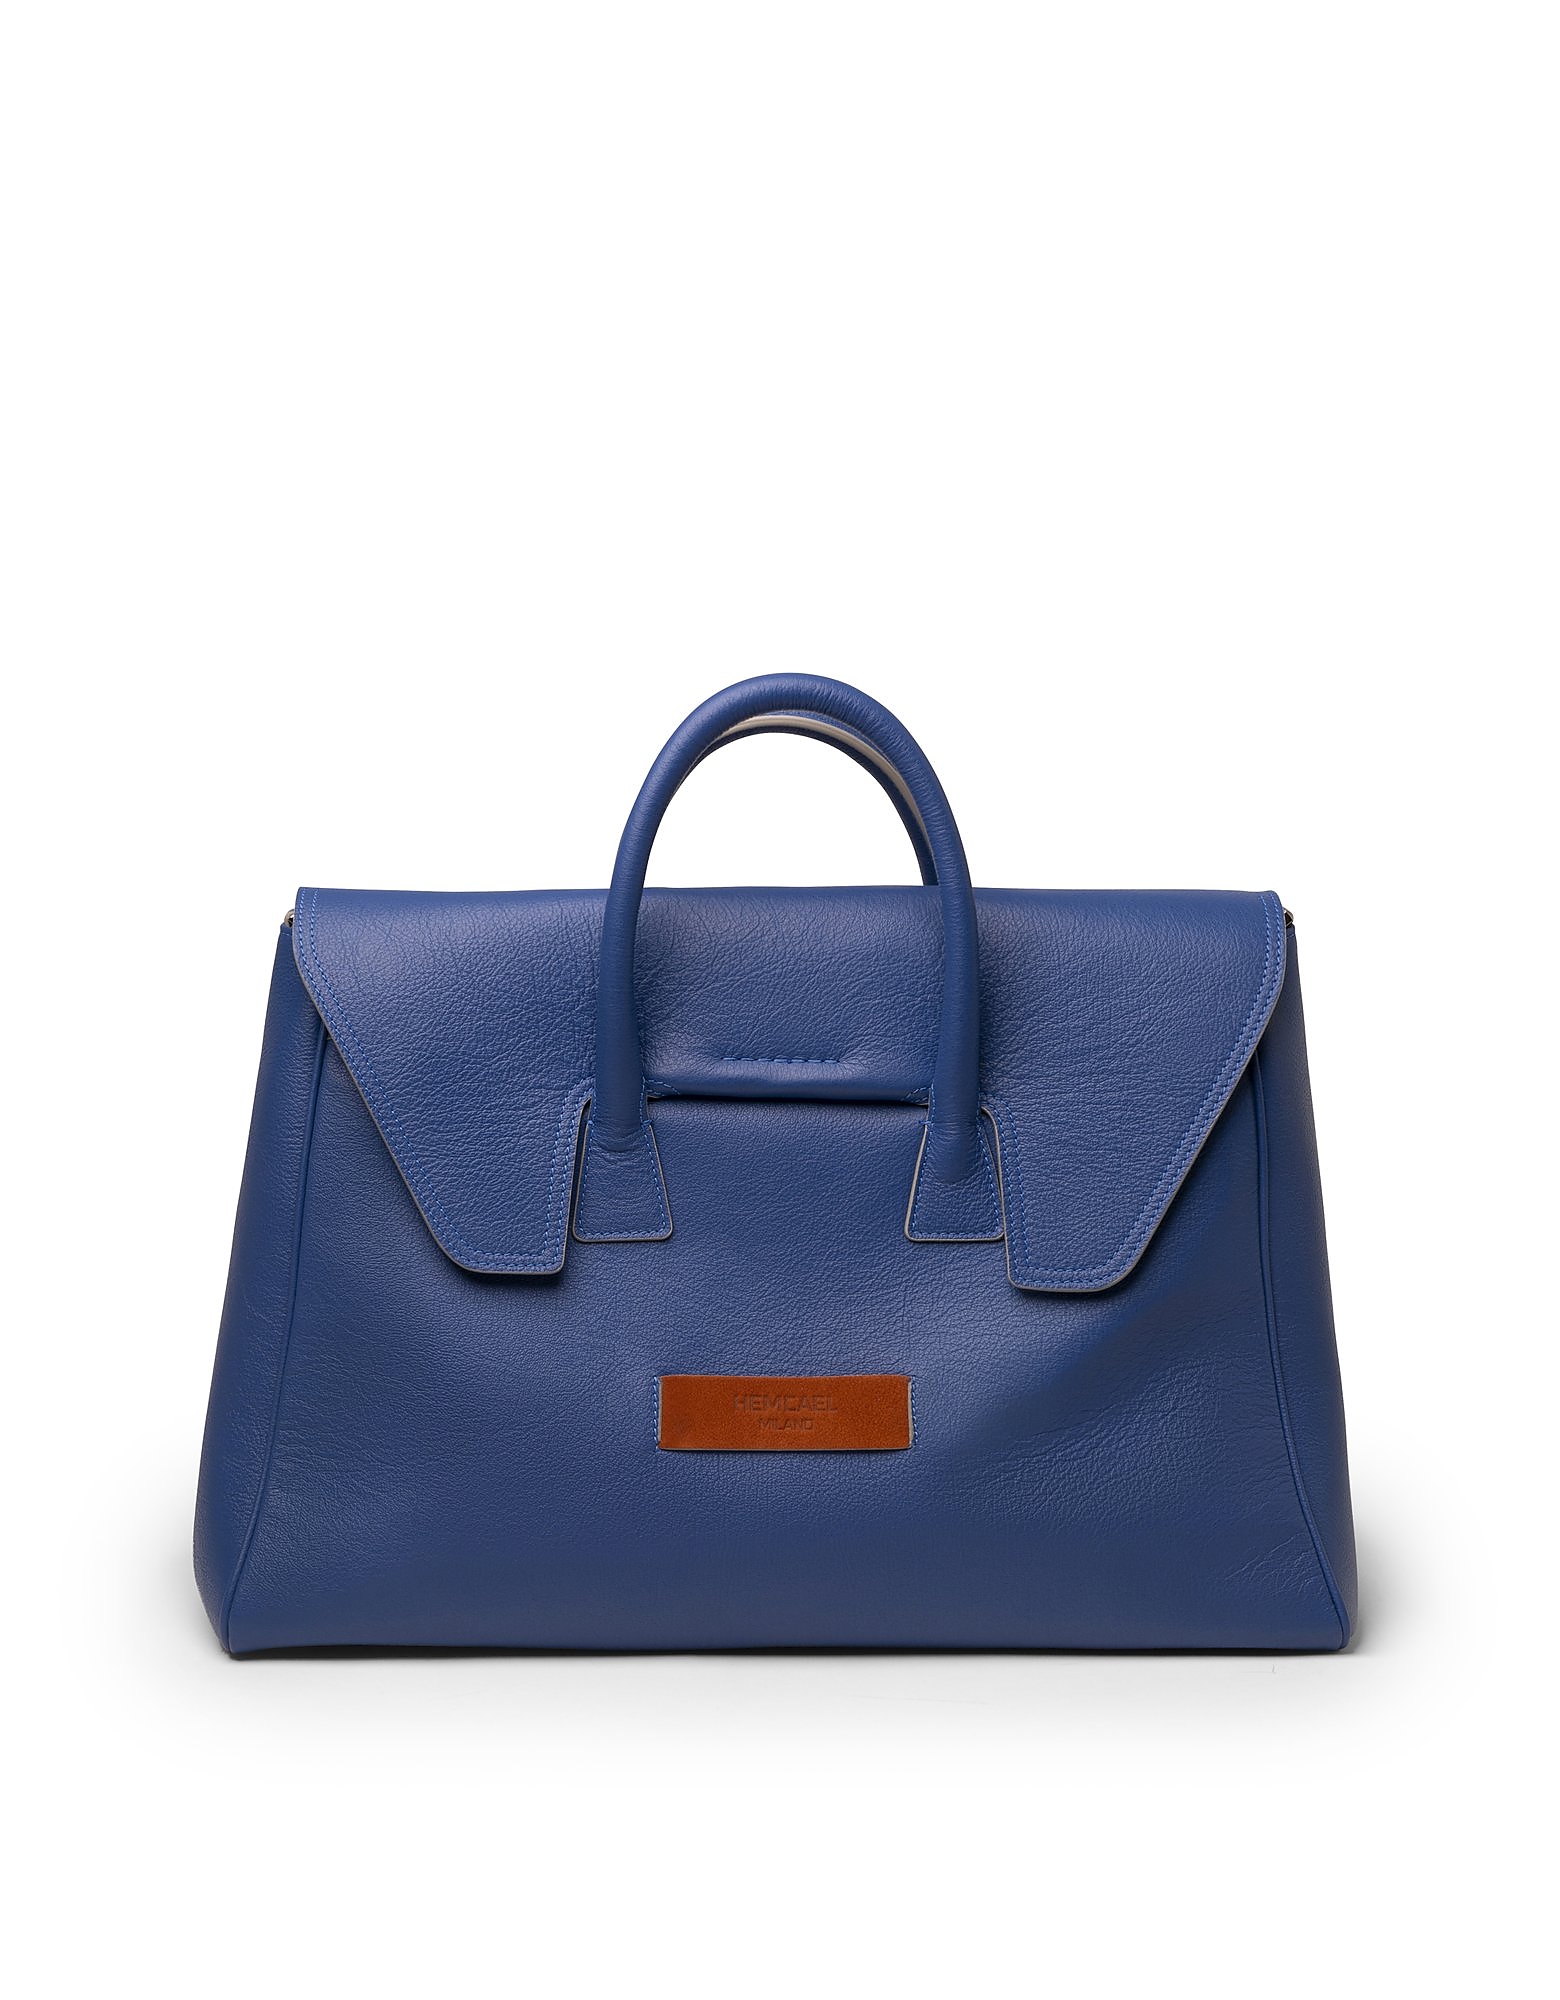 Hemcael Designer Handbags Gala Leather Top Handle Bag In Bleu